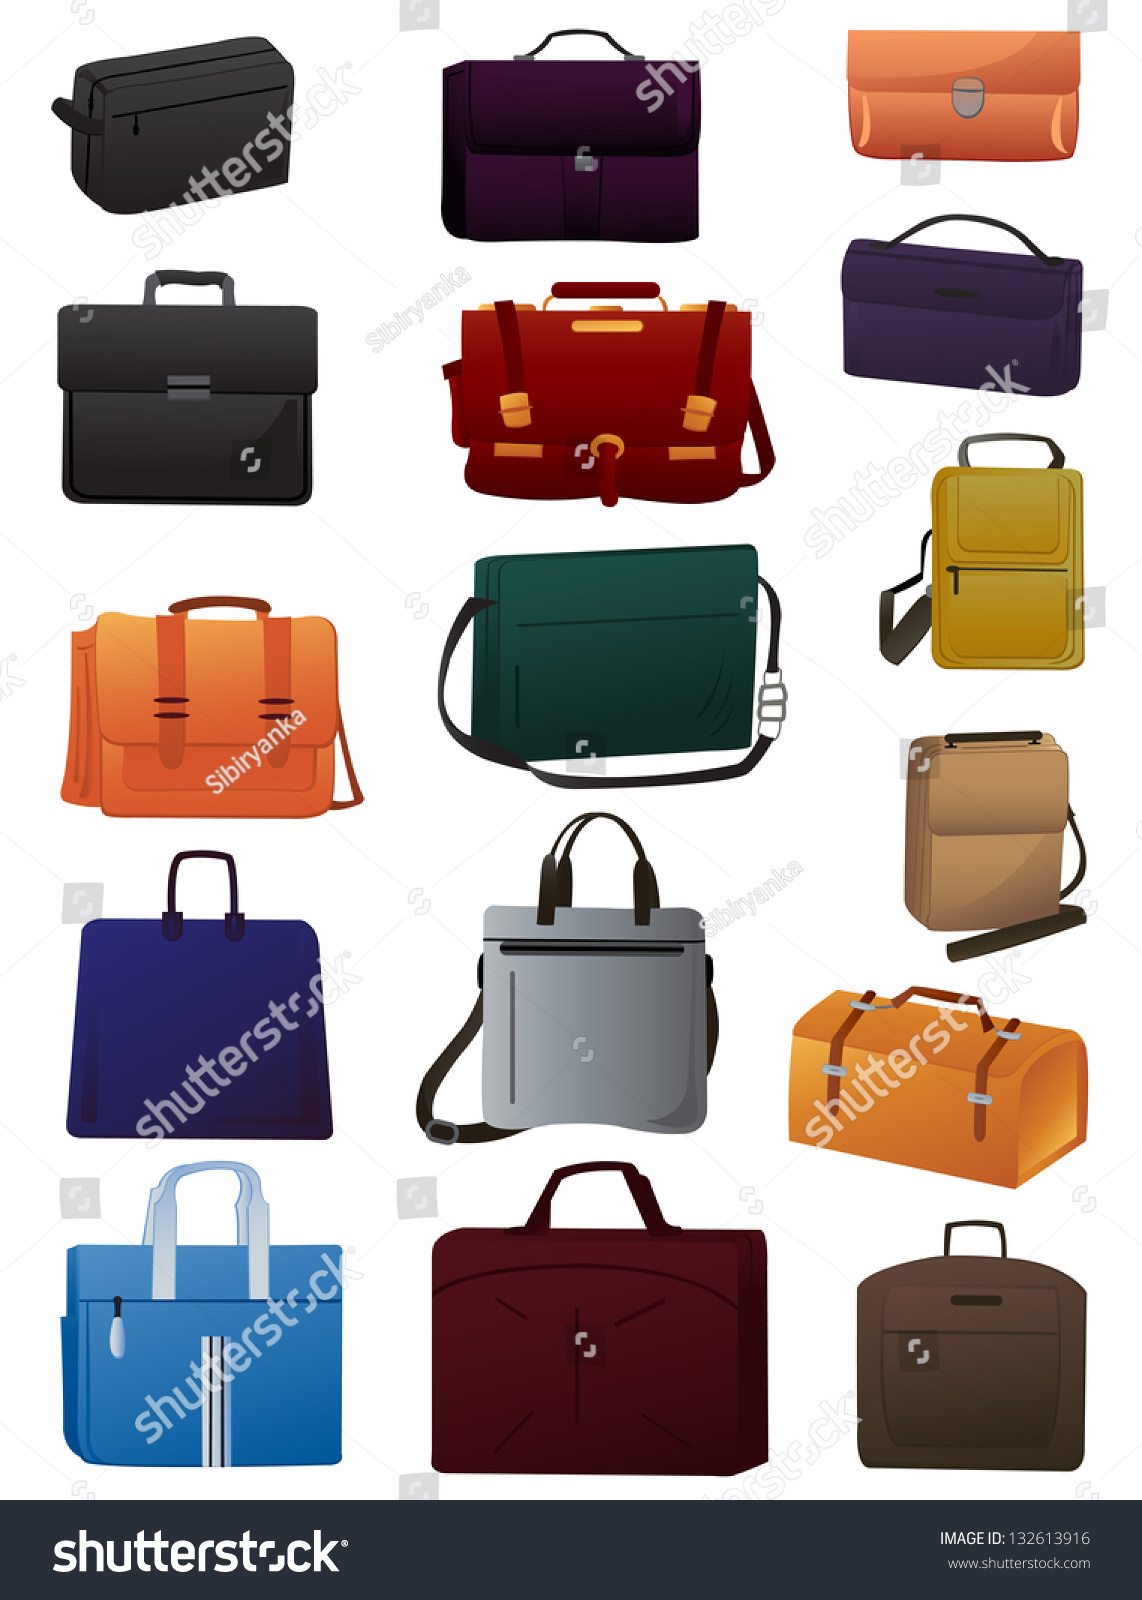 29,297 Laptop bags Stock Vectors, Images & Vector Art | Shutterstock